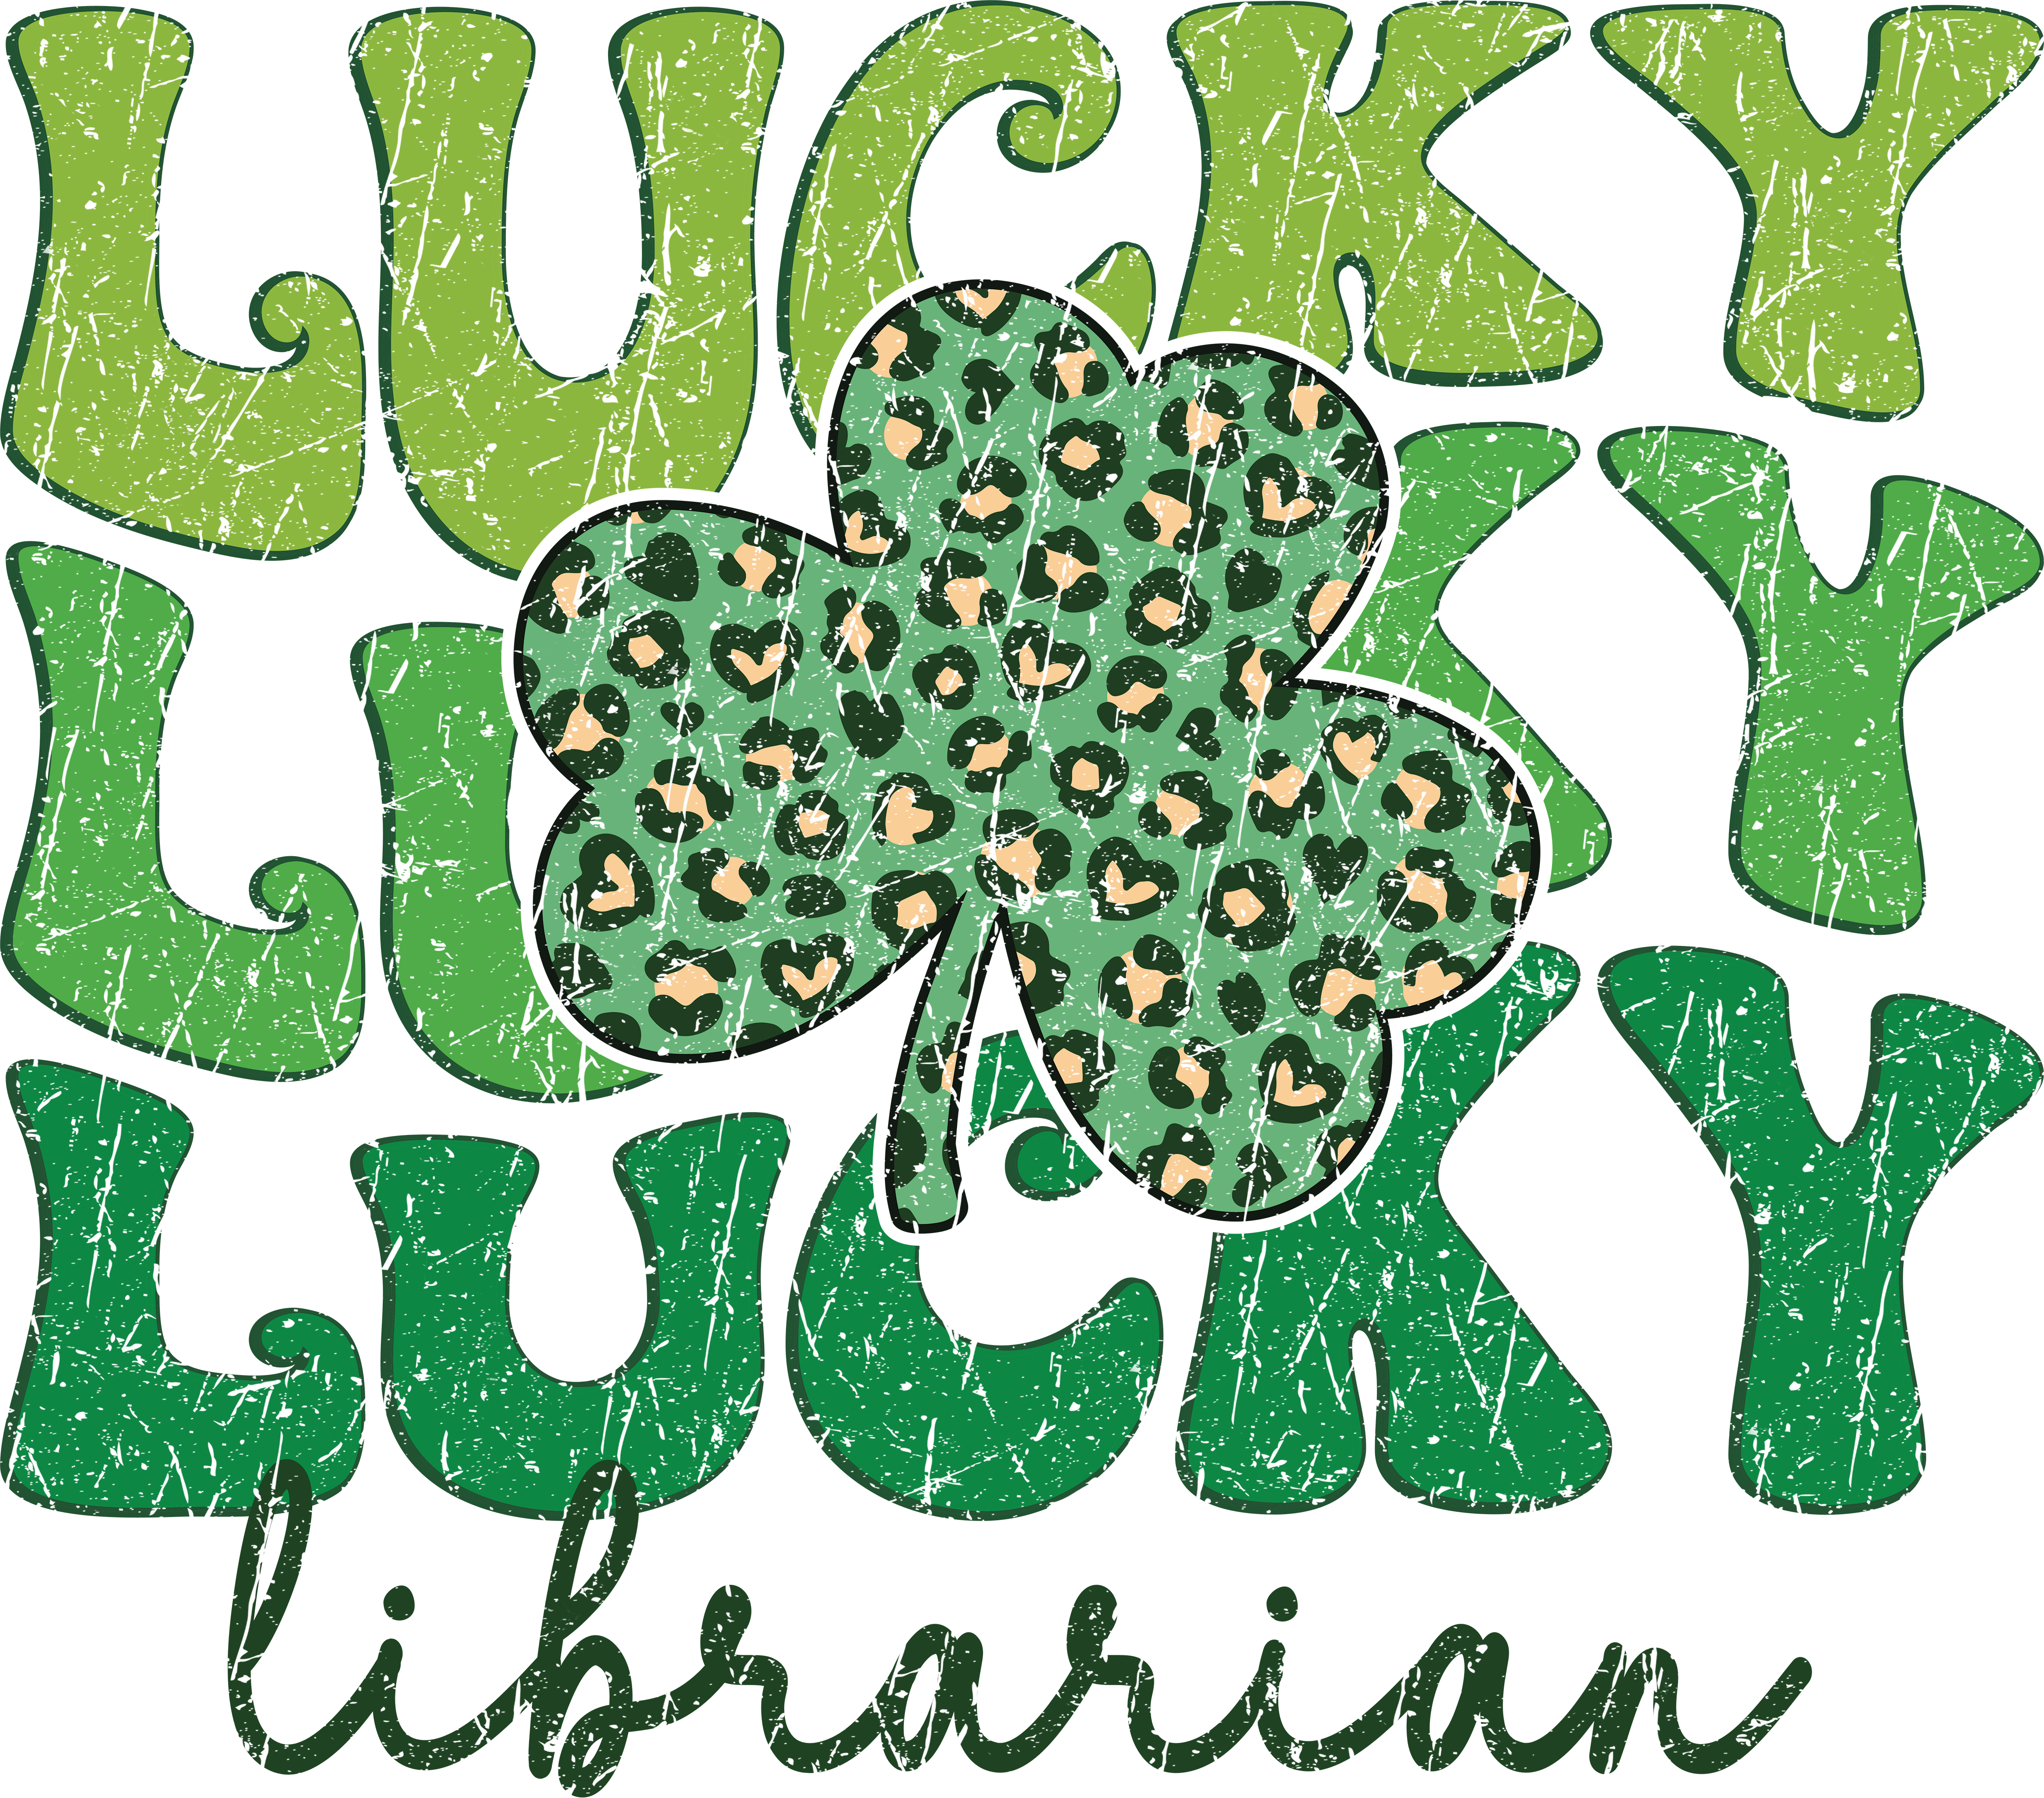 Lucky bus librarian Scorpio 65 Designs